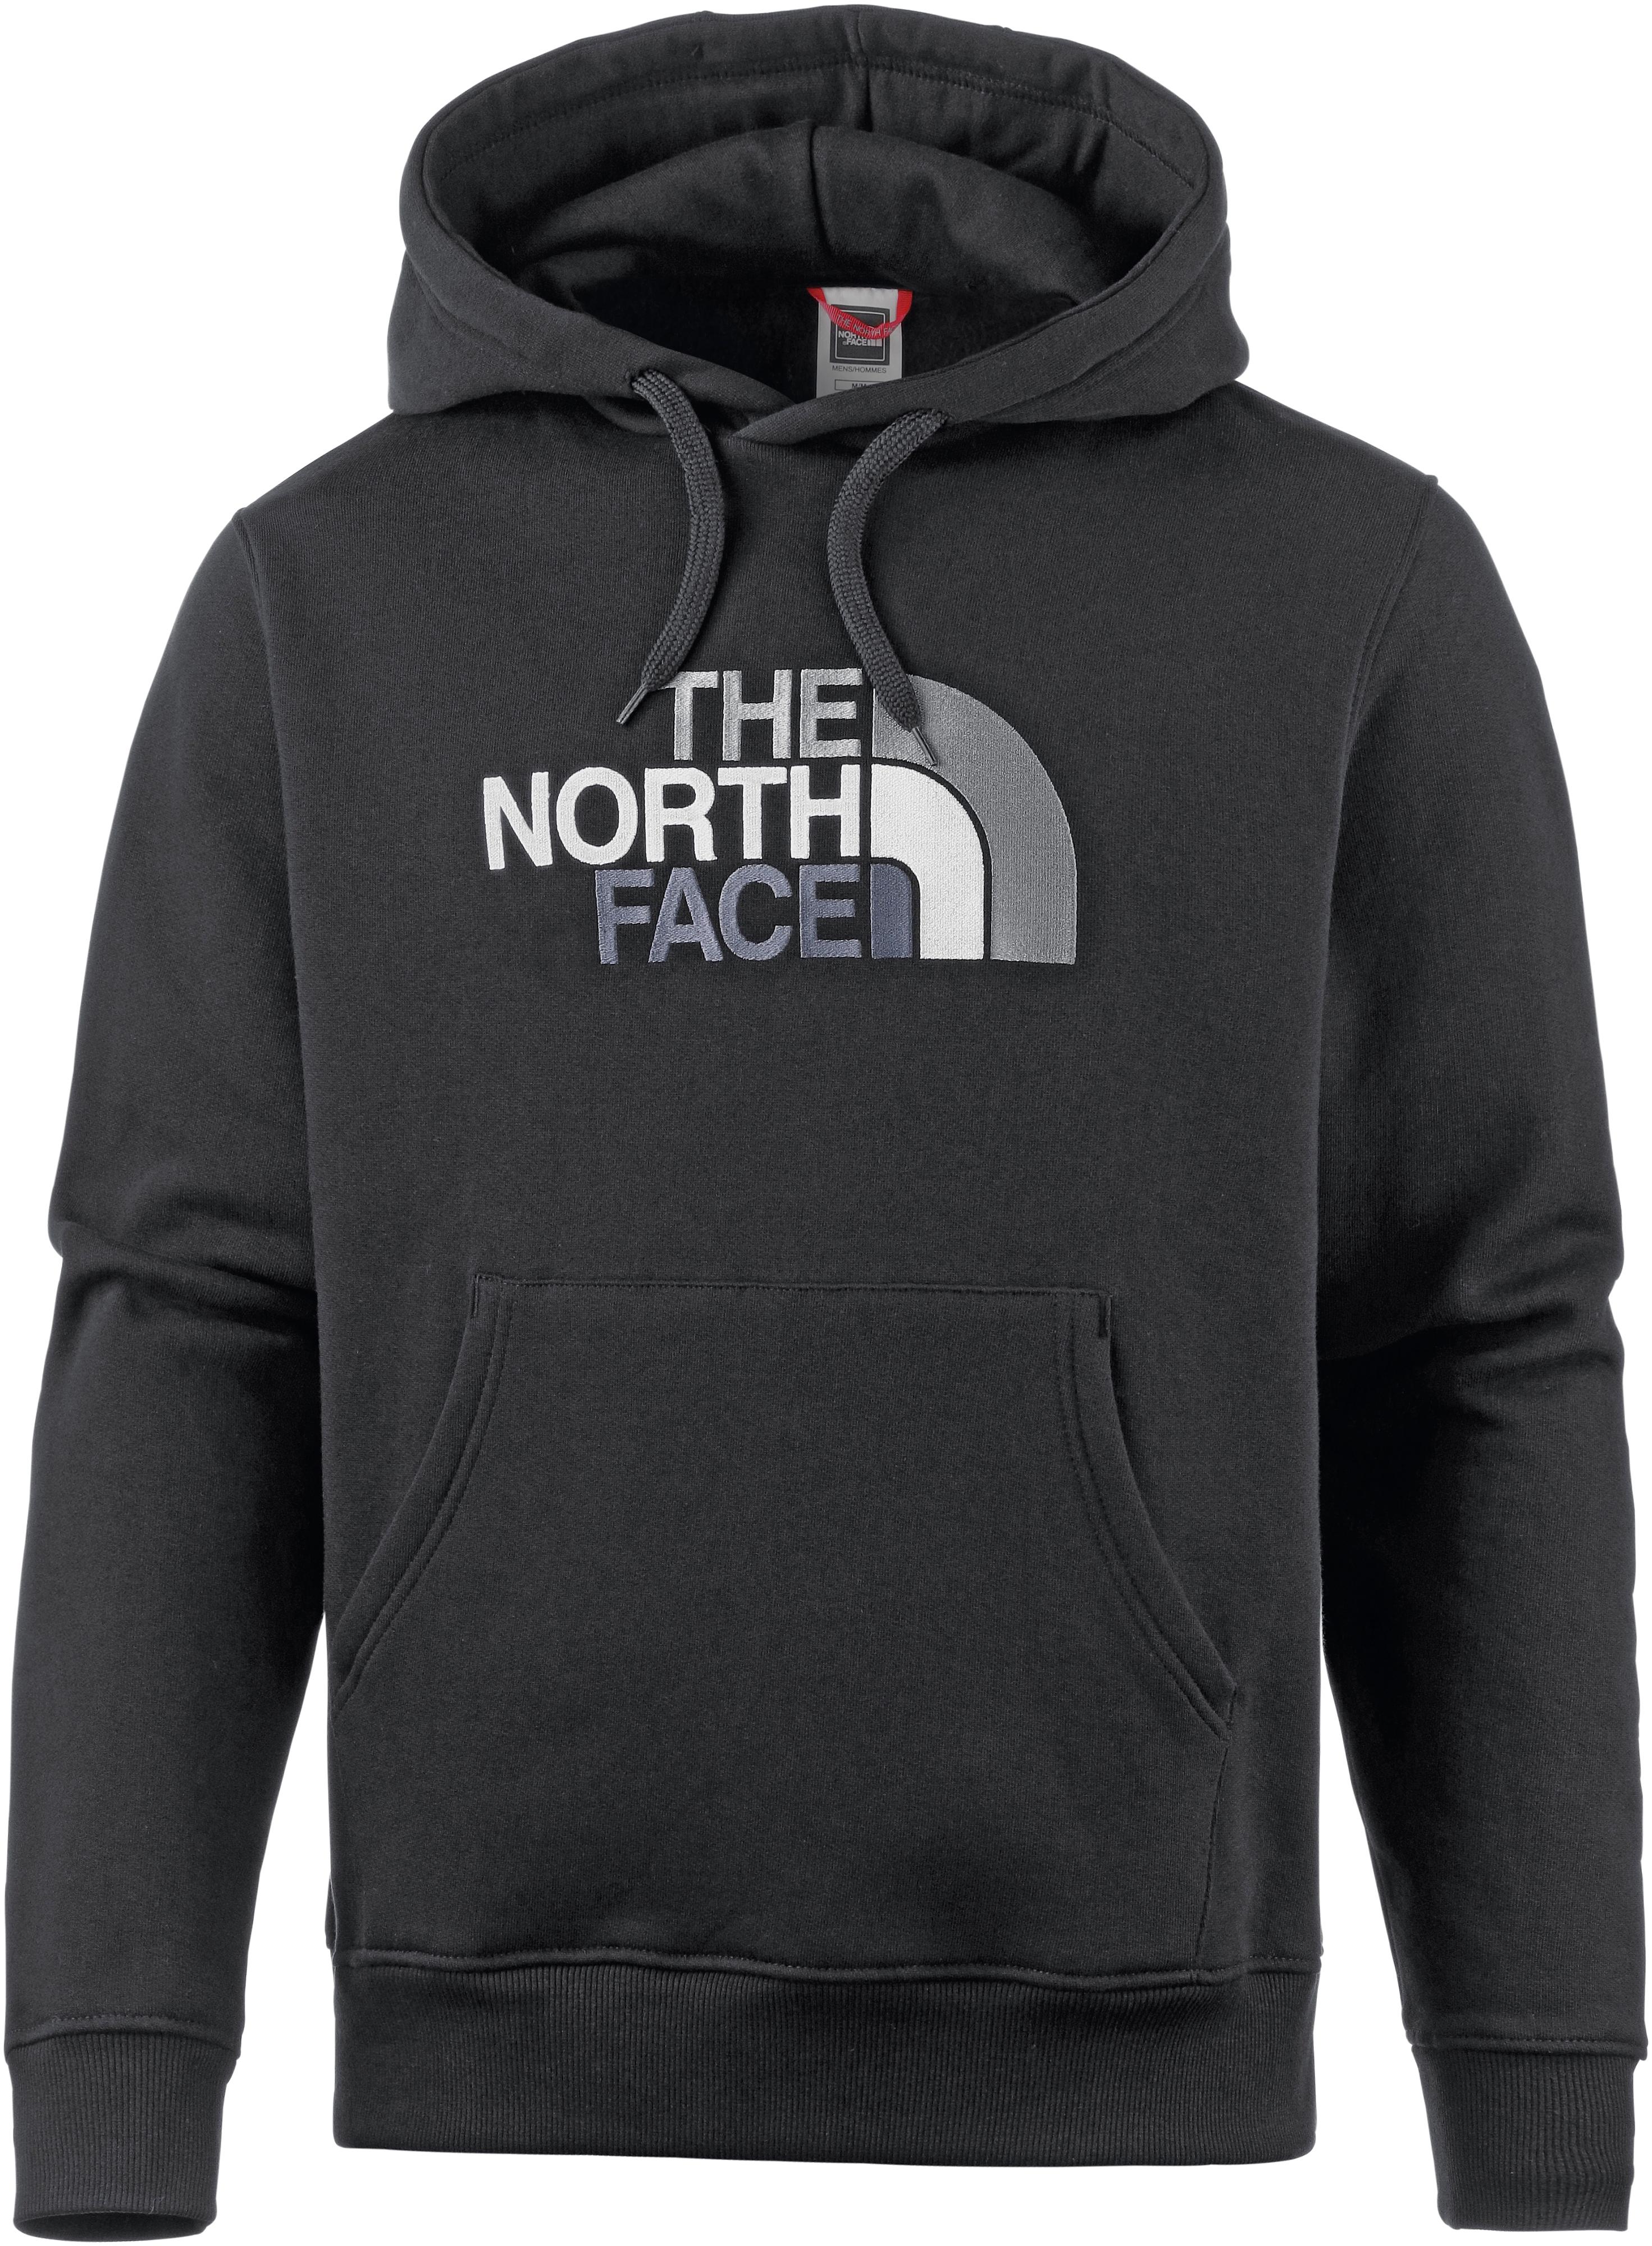 The North Face Drew Peak Hoodie Herren Tnf Black Tnf Black Im Online Shop Von Sportscheck Kaufen